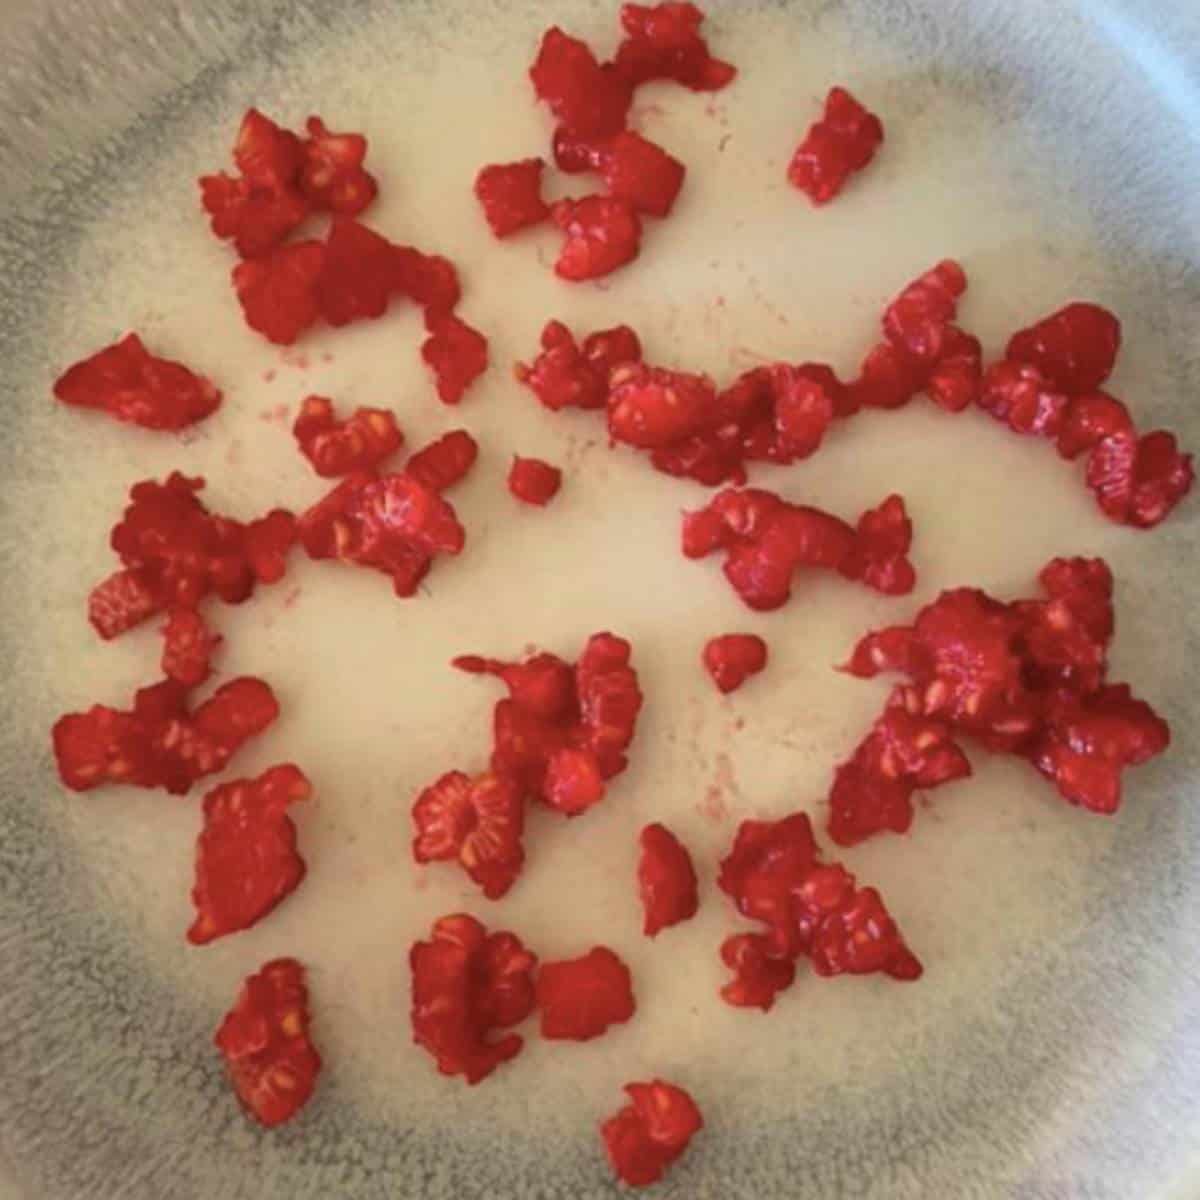 Frozen raspberries on plate. 